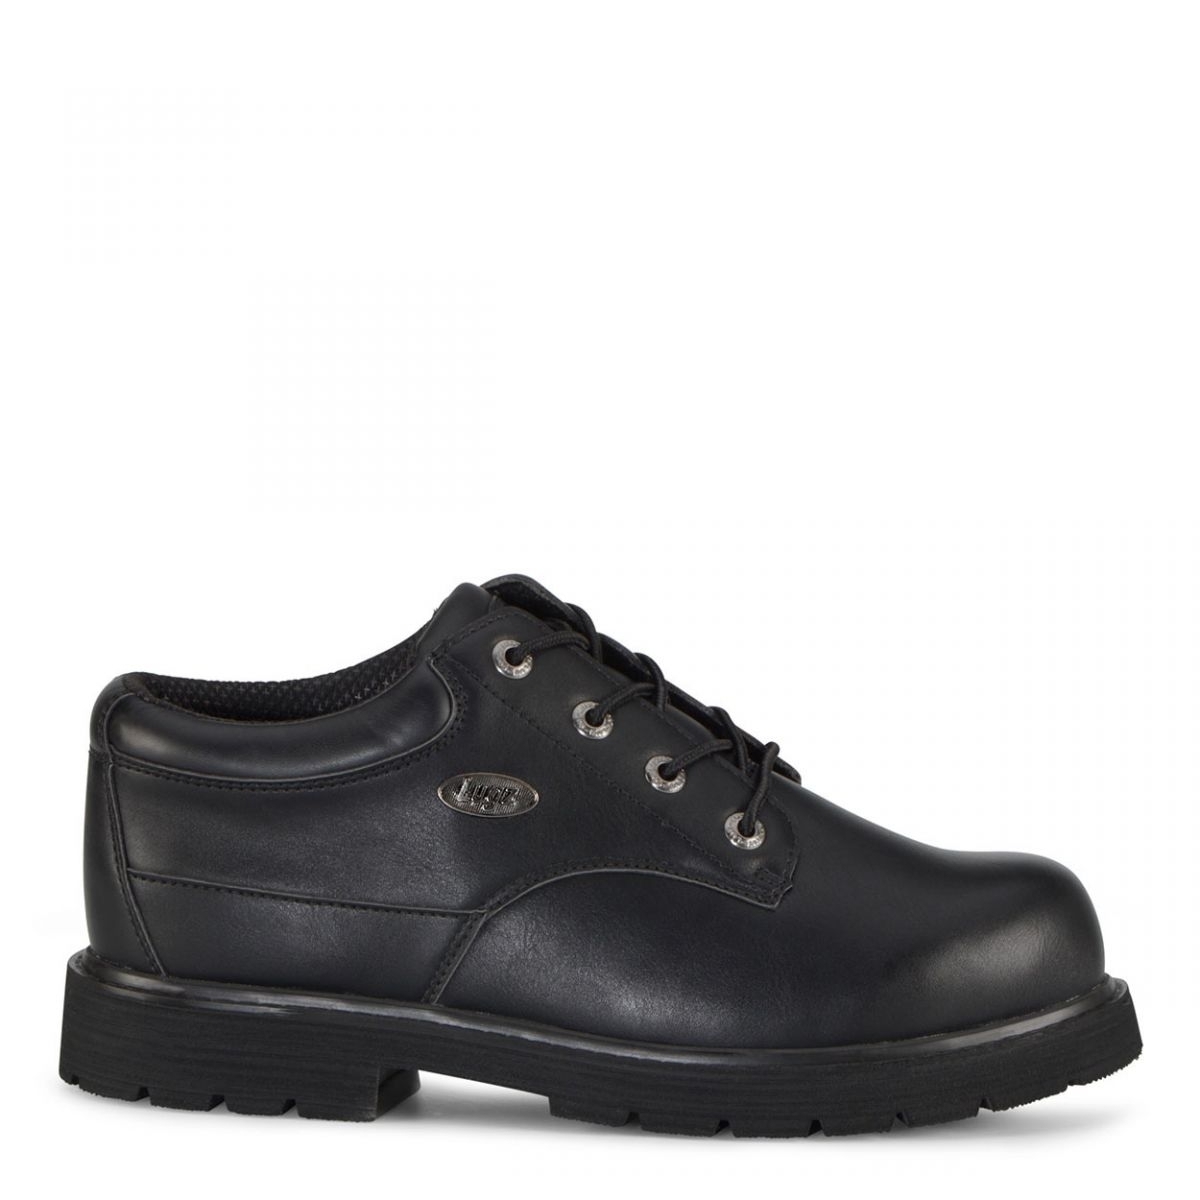 Lugz Men's Drifter Lo Lx Oxford Boot Black - MDRLXLV-001 BLACK - BLACK, 8